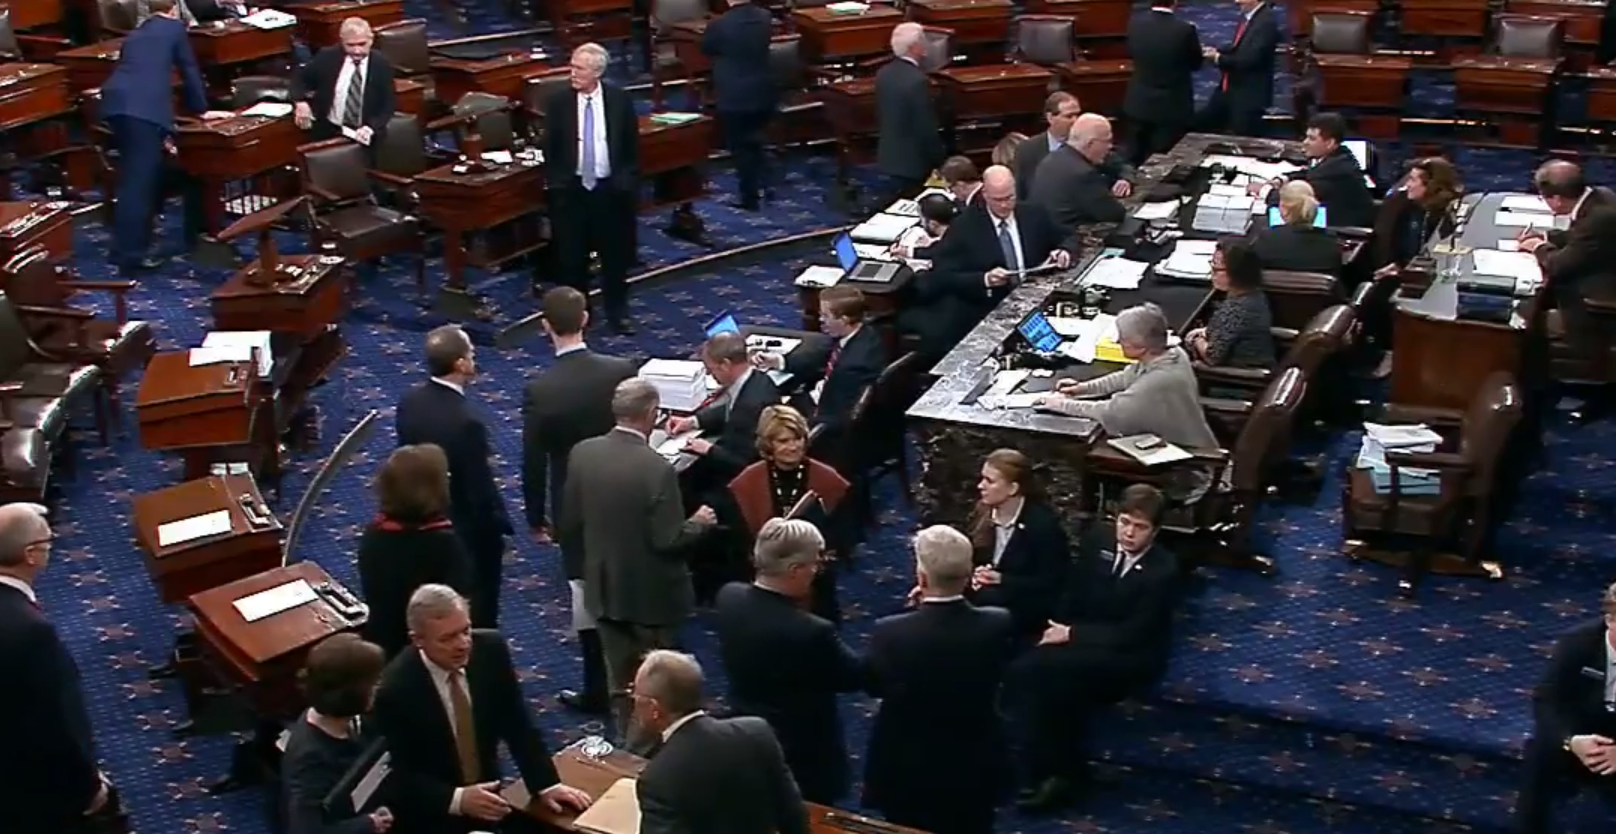 Senate floor